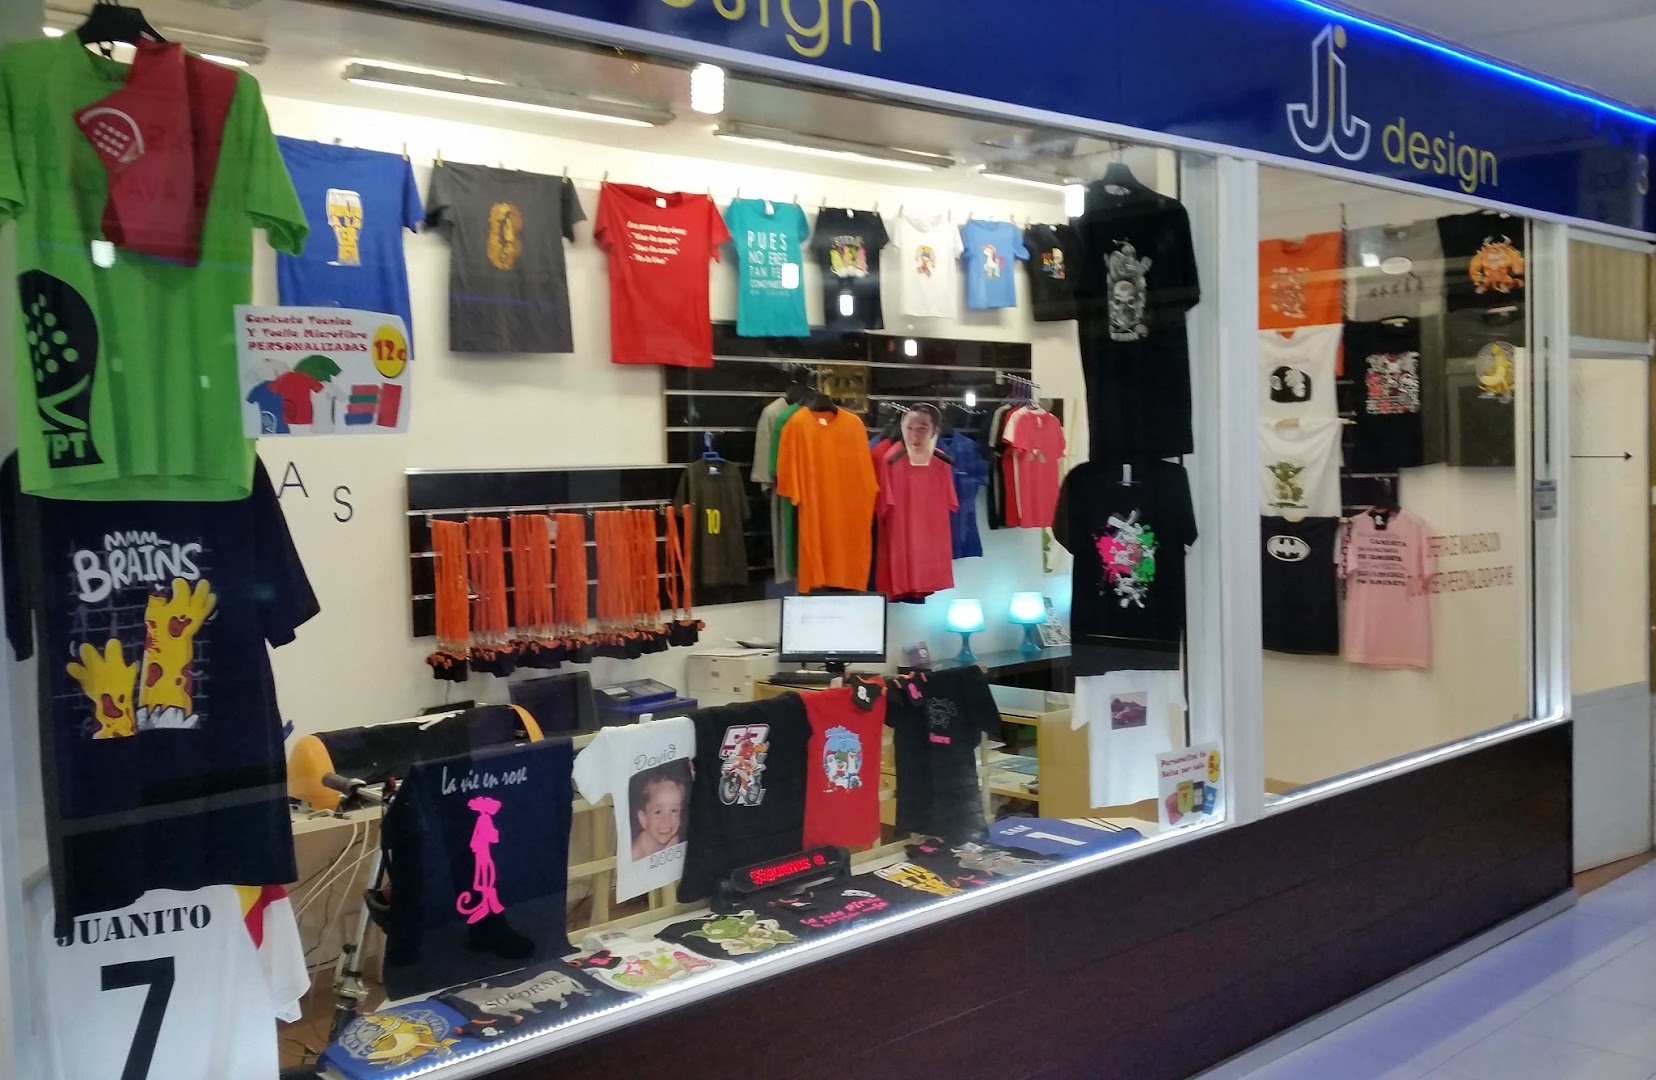 La tienda de Camisetas - JJ Design